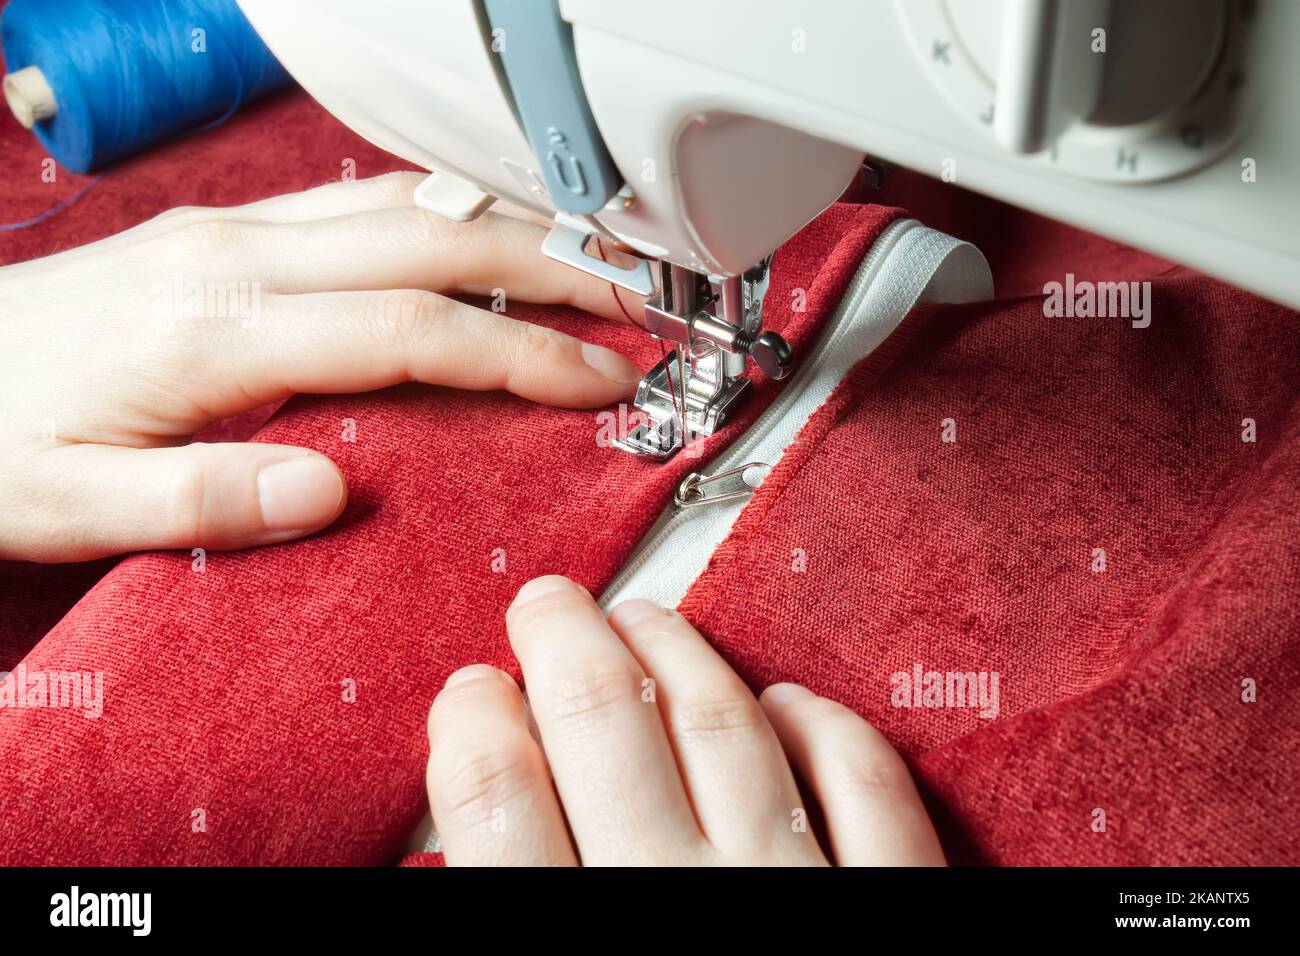 Schneiderhände nähen den Reißverschluss an roten Kleidungsstücken von einer modernen Nähmaschine mit speziellem Nähfuß. Nähprozess Stockfoto